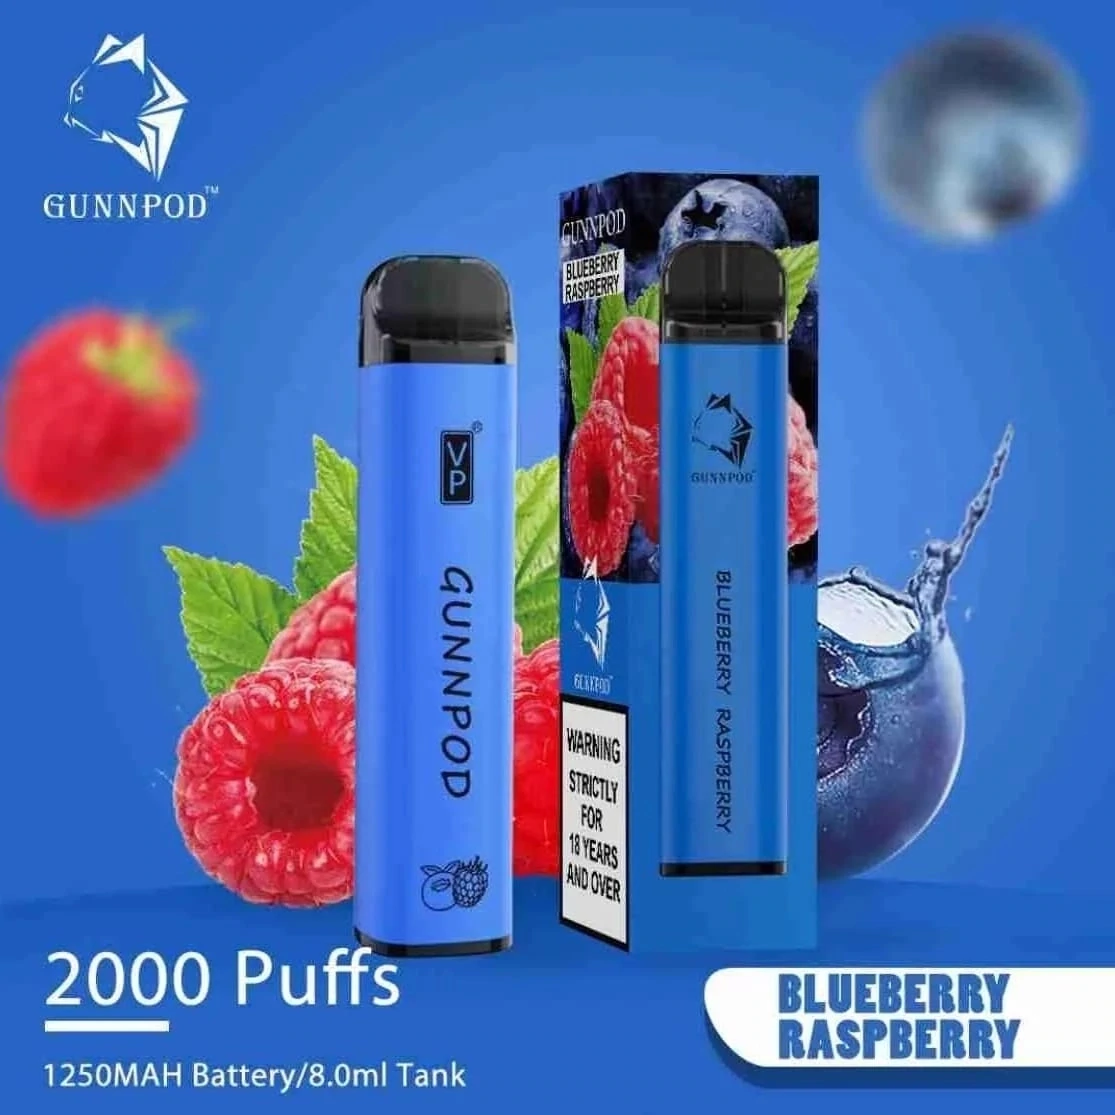 Gunnpod Blueberry Raspberry 2000 Puffs